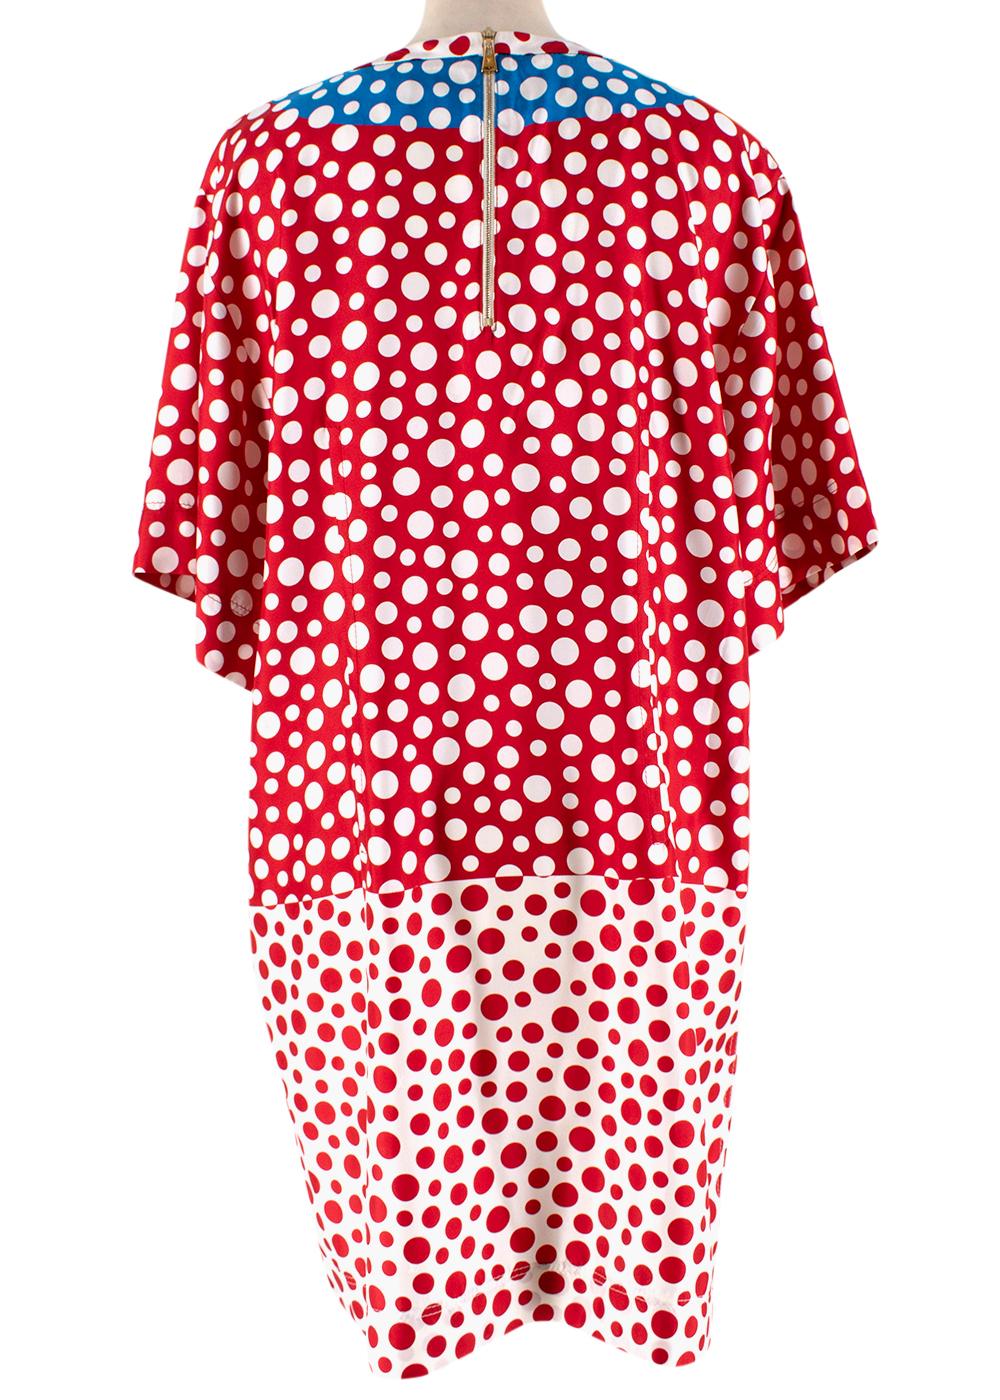 Louis Vuitton x Yayoi Kusama Red & Blue Silk Spotted Dress - Size US 10 3